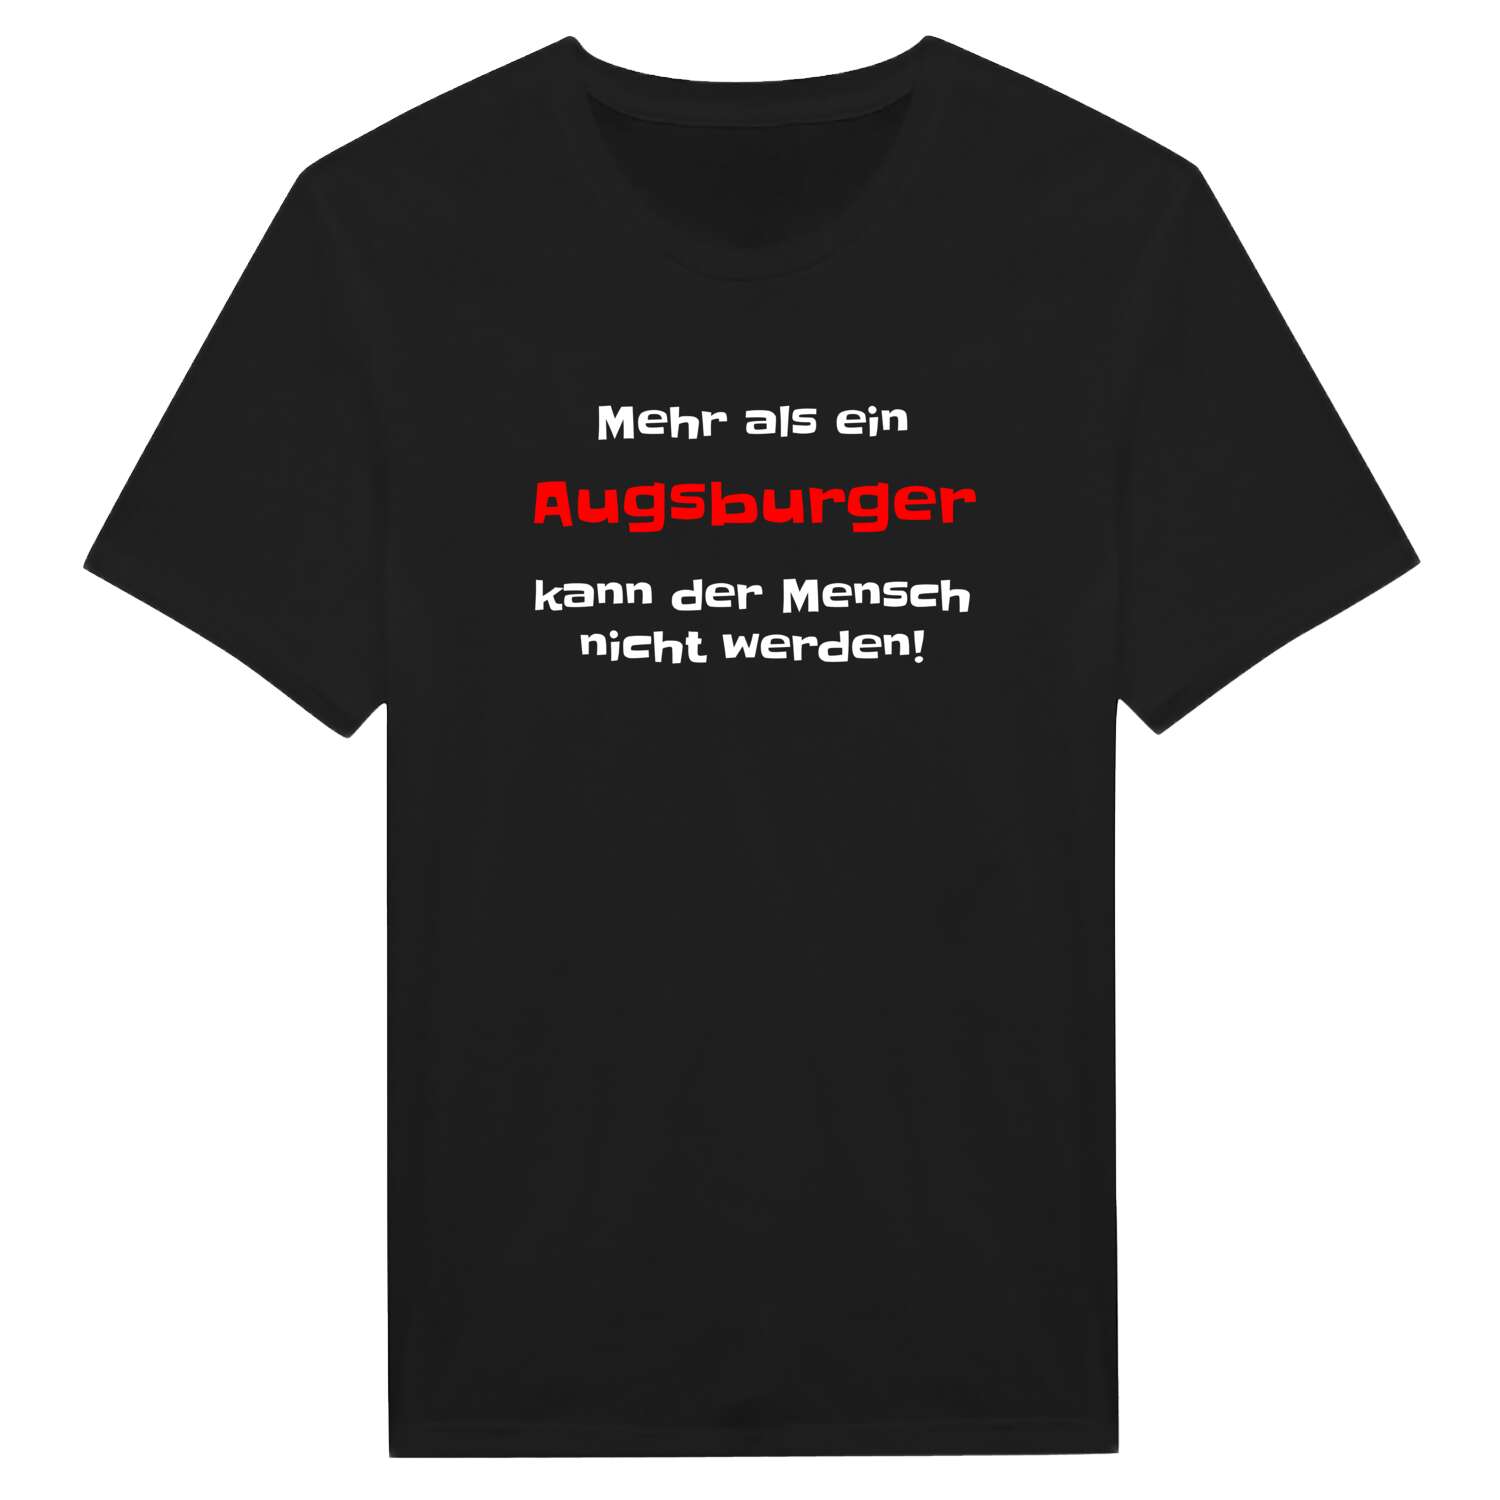 Augsburg T-Shirt »Mehr als ein«